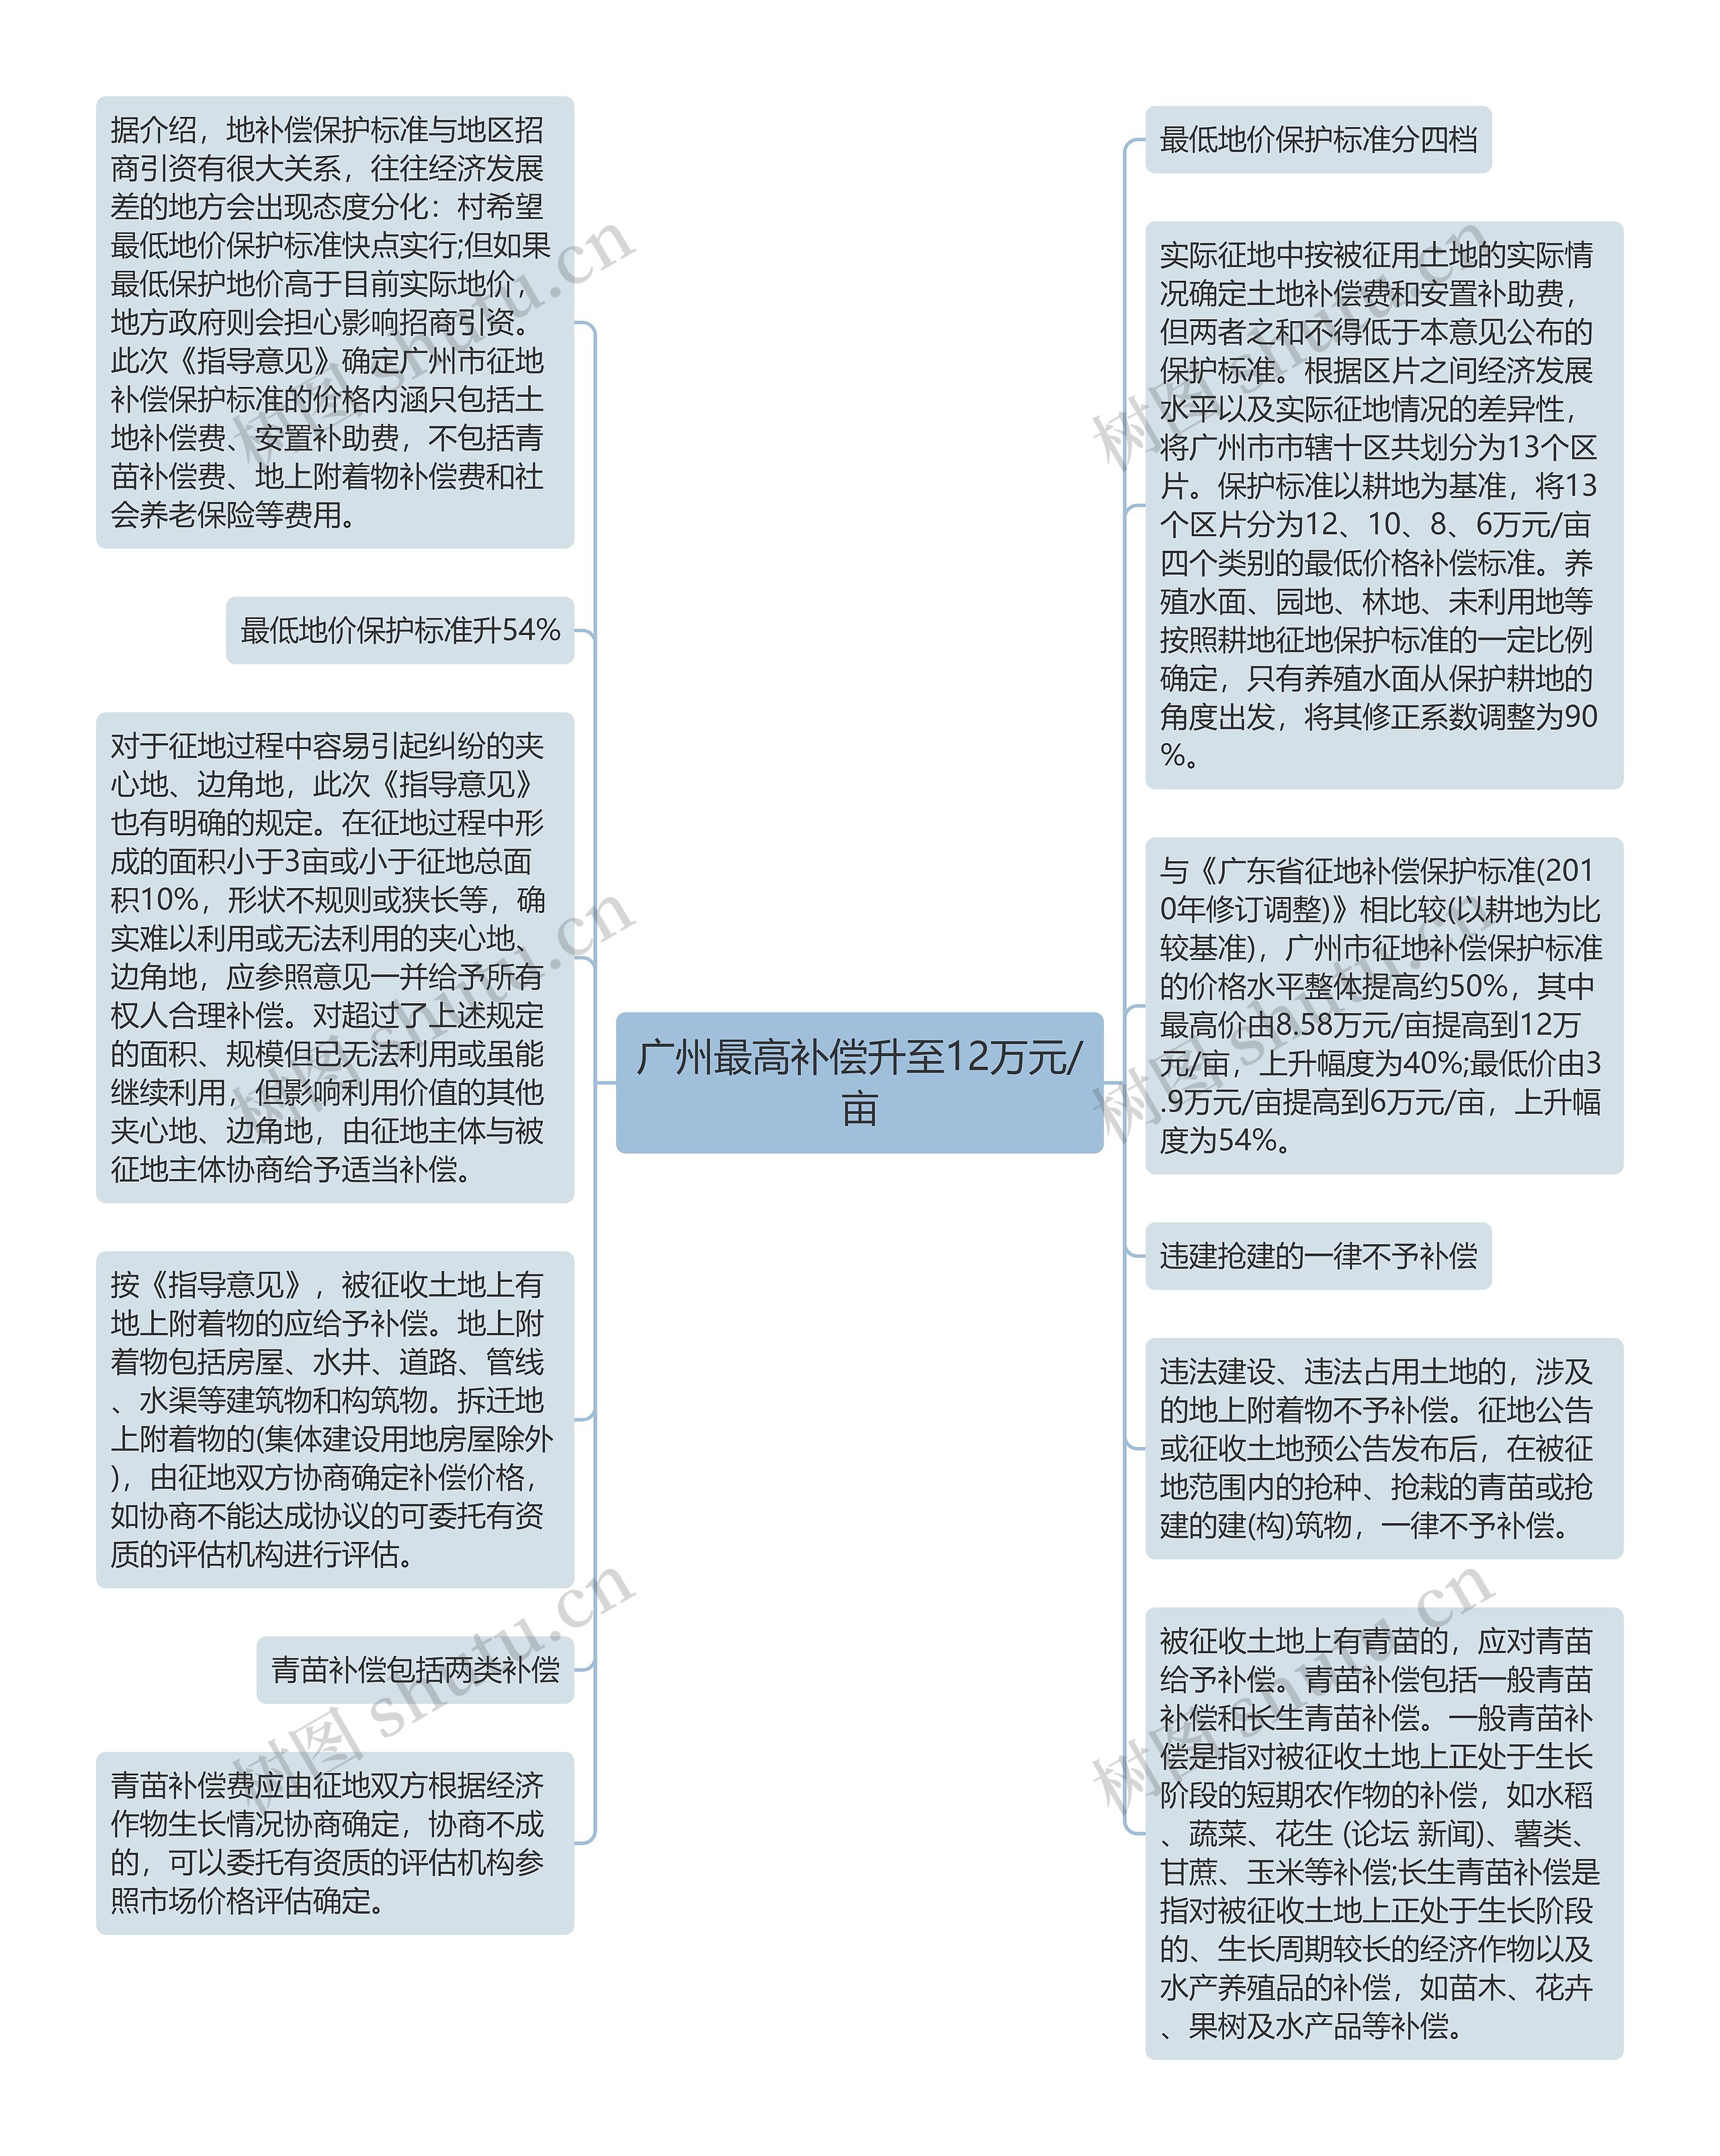 广州最高补偿升至12万元/亩思维导图